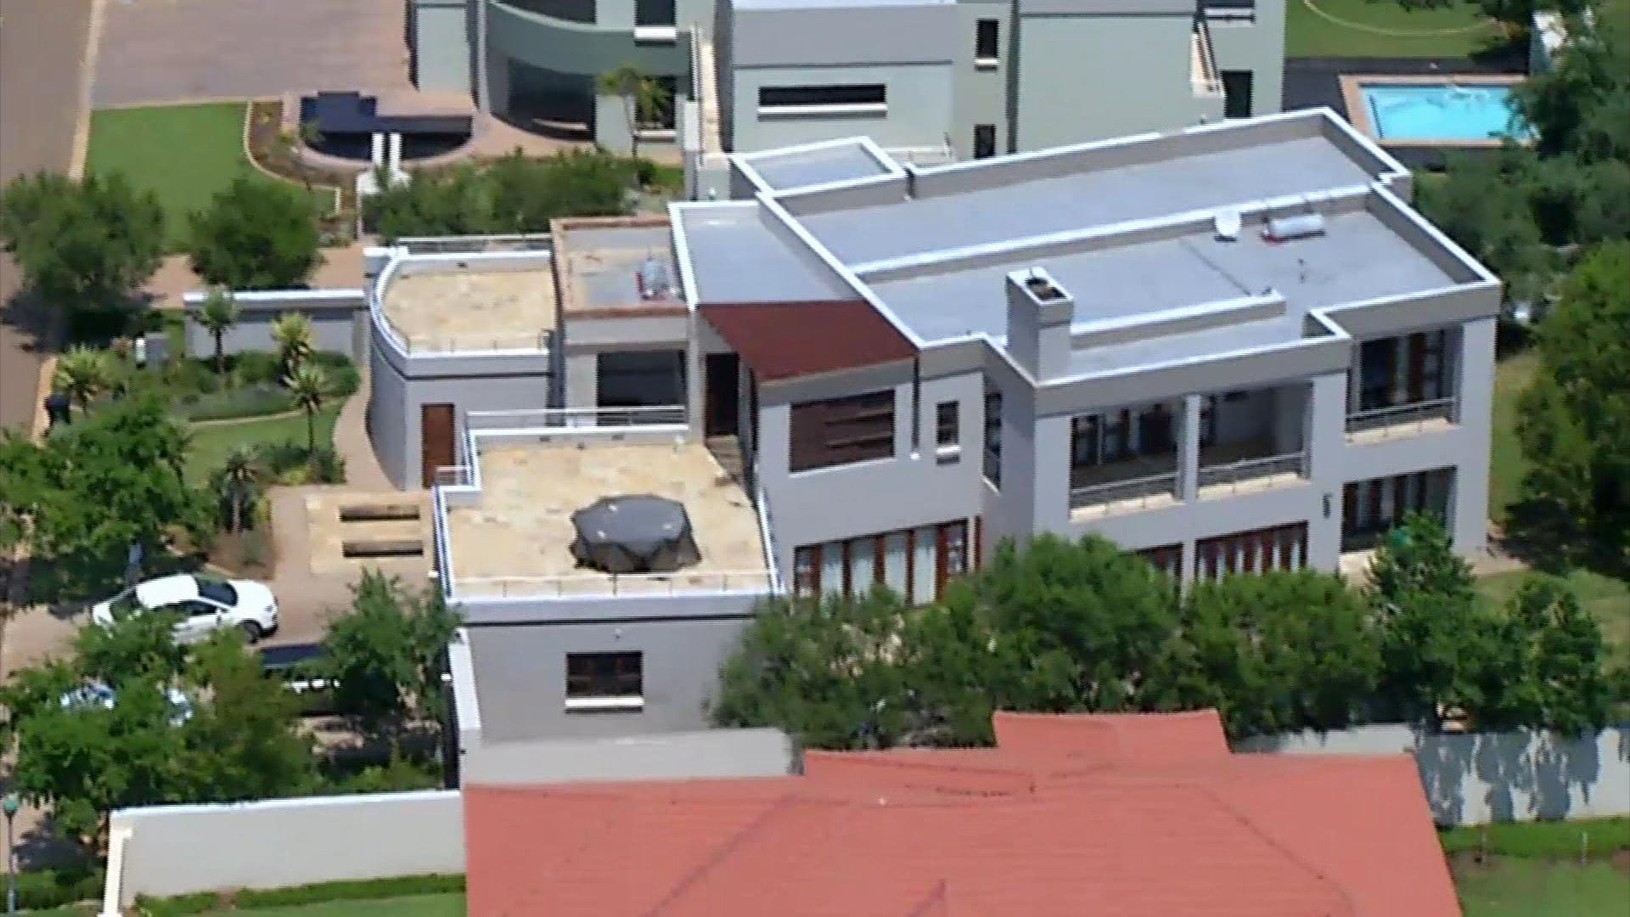 Dom Oscara Pistoriusa